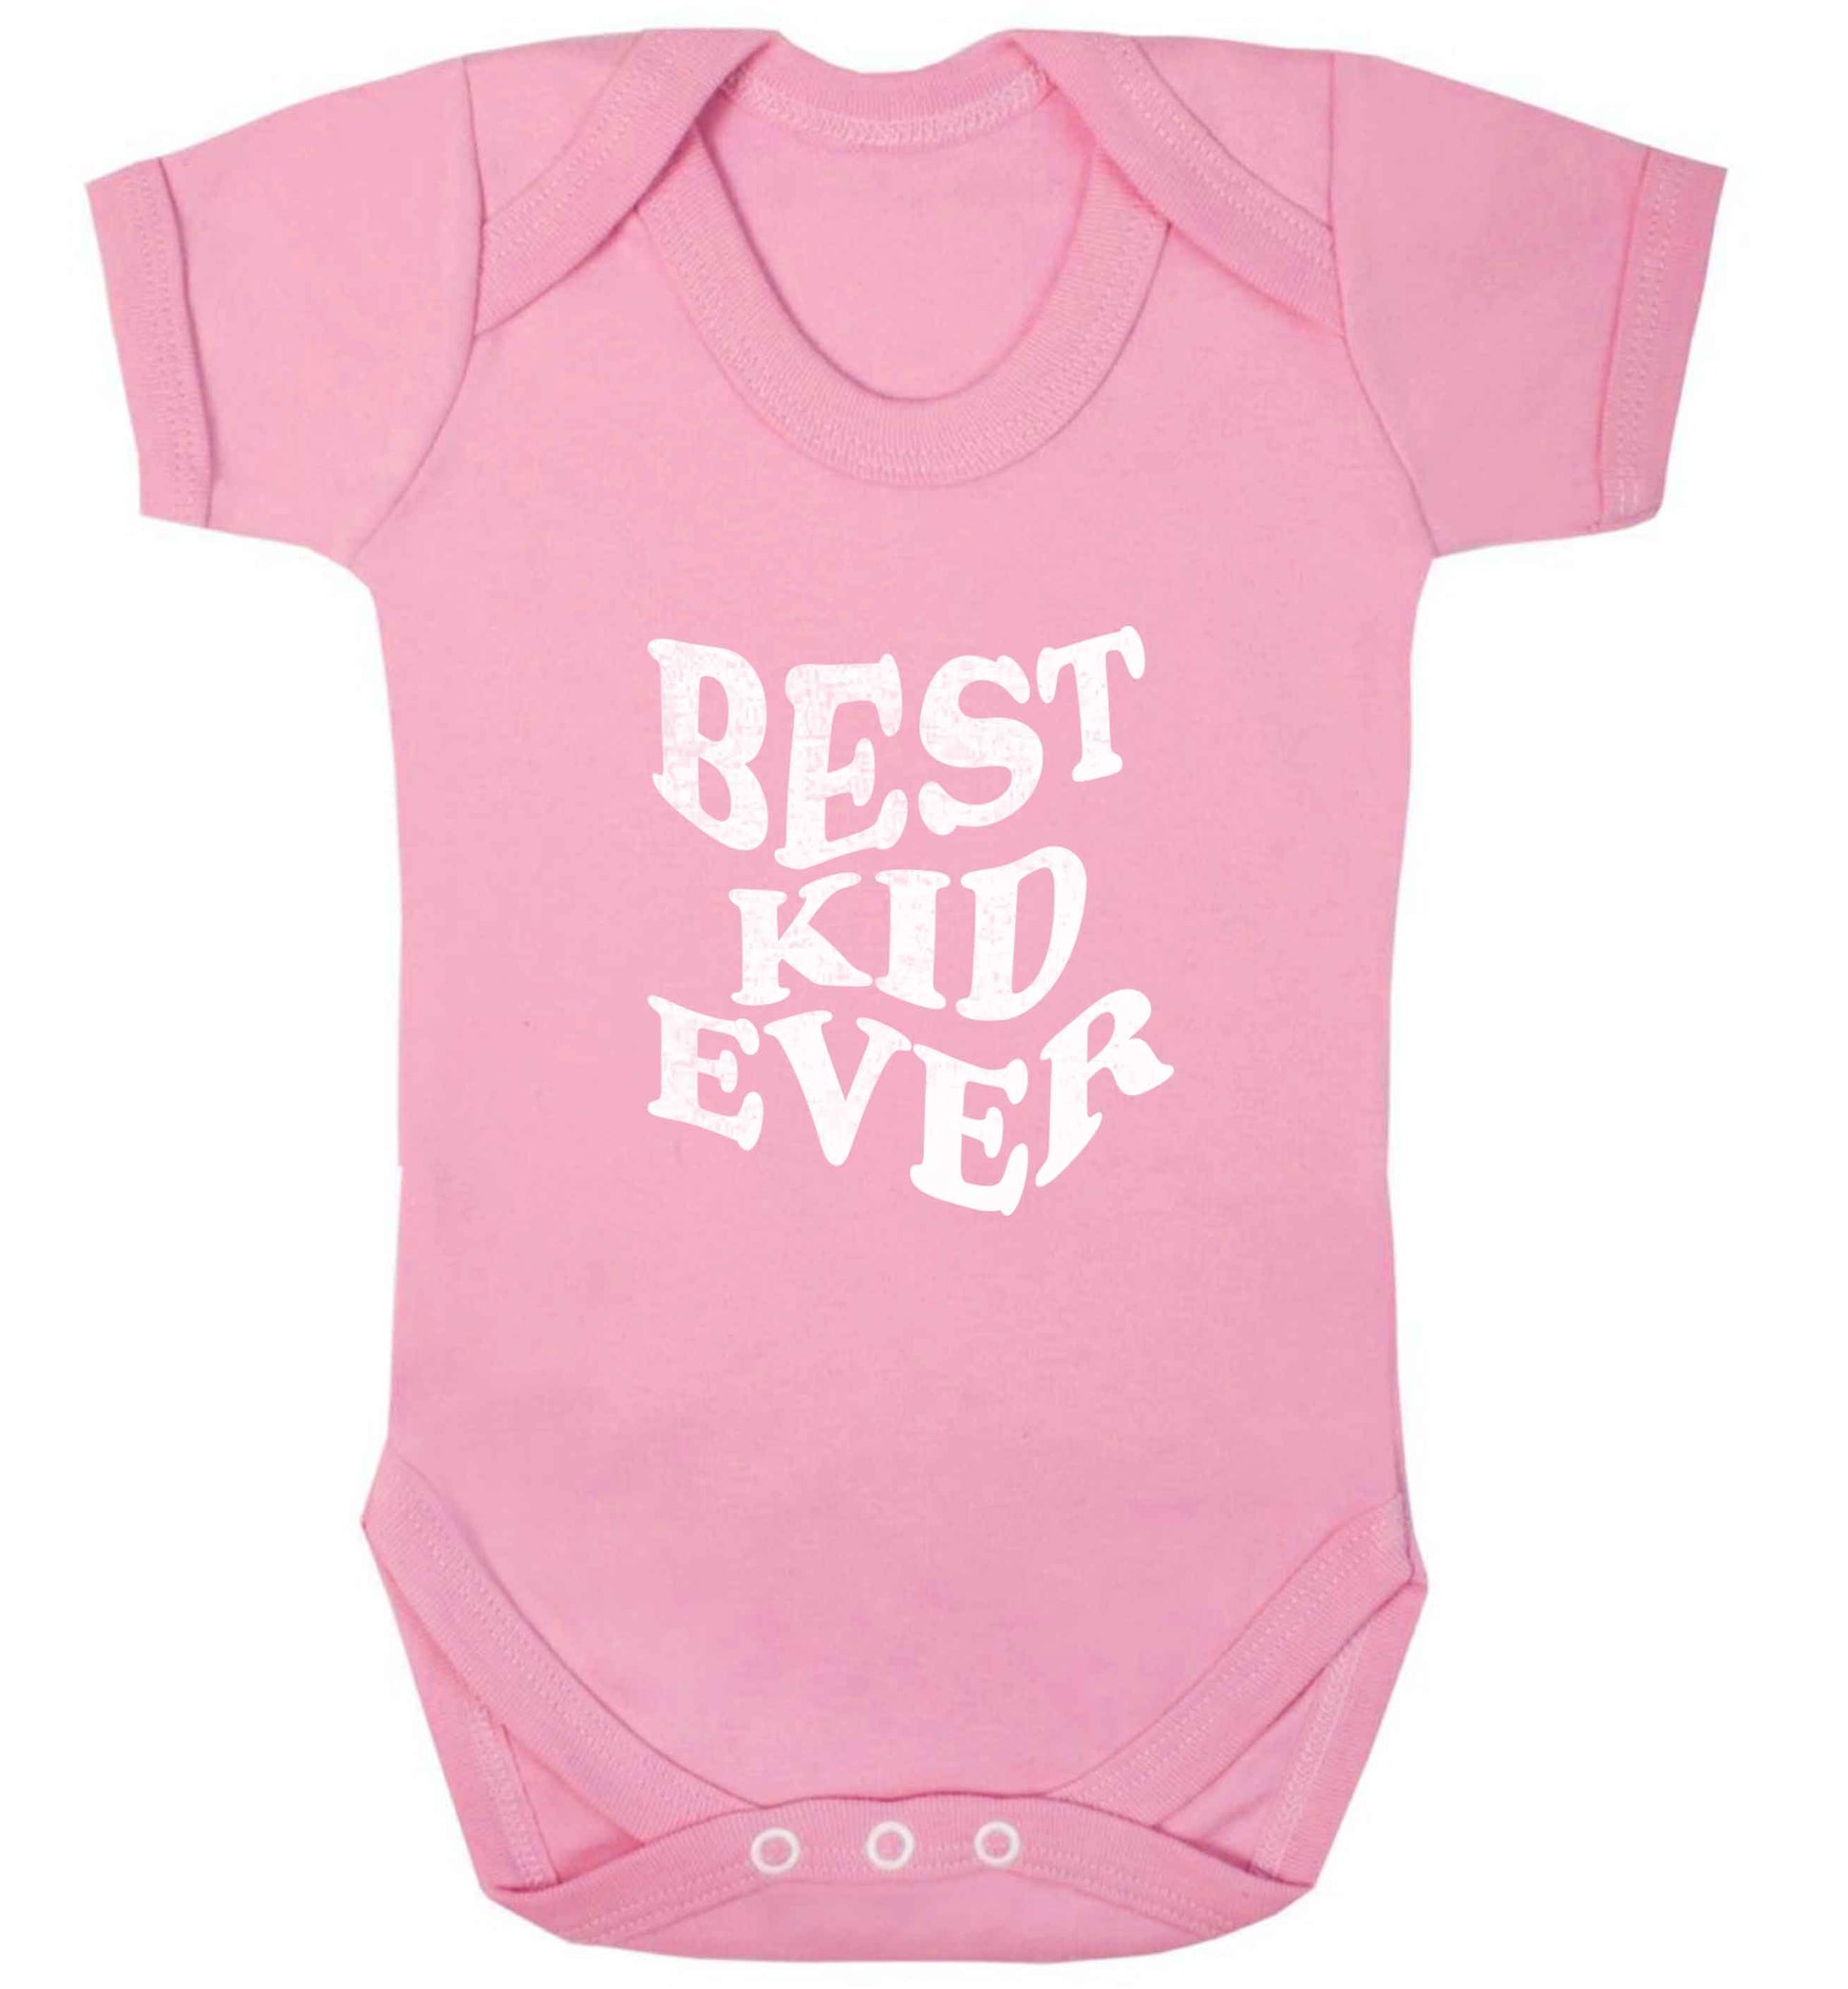 Best kid ever baby vest pale pink 18-24 months